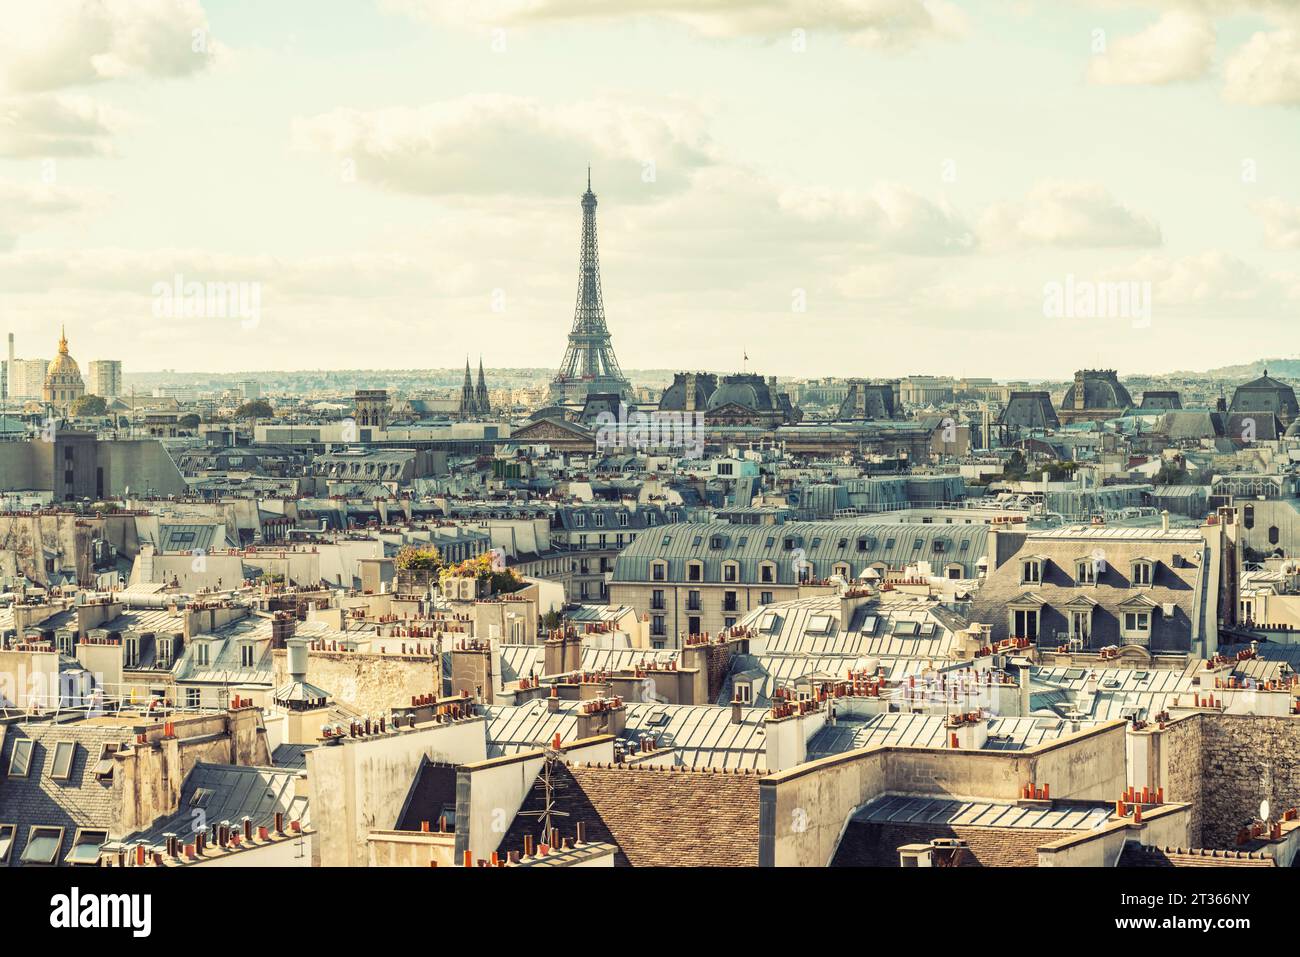 France, Ile-De-France, Paris, Les Halles de Paris district with Eiffel tower in background Stock Photo